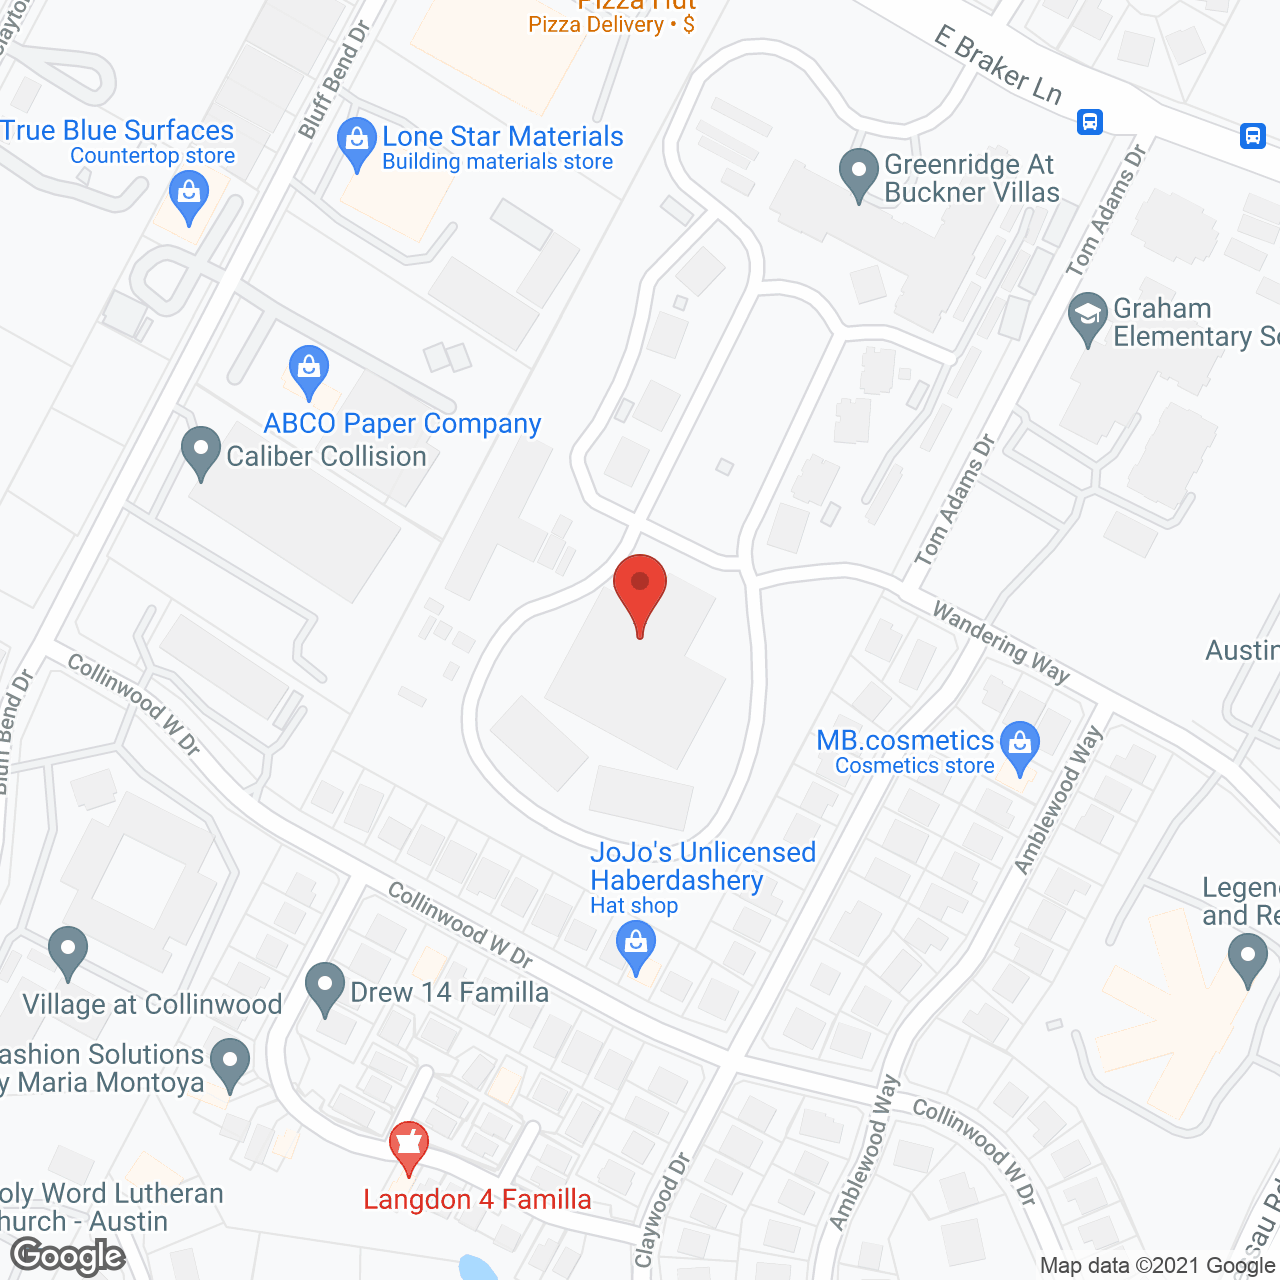 Buckner Villas in google map